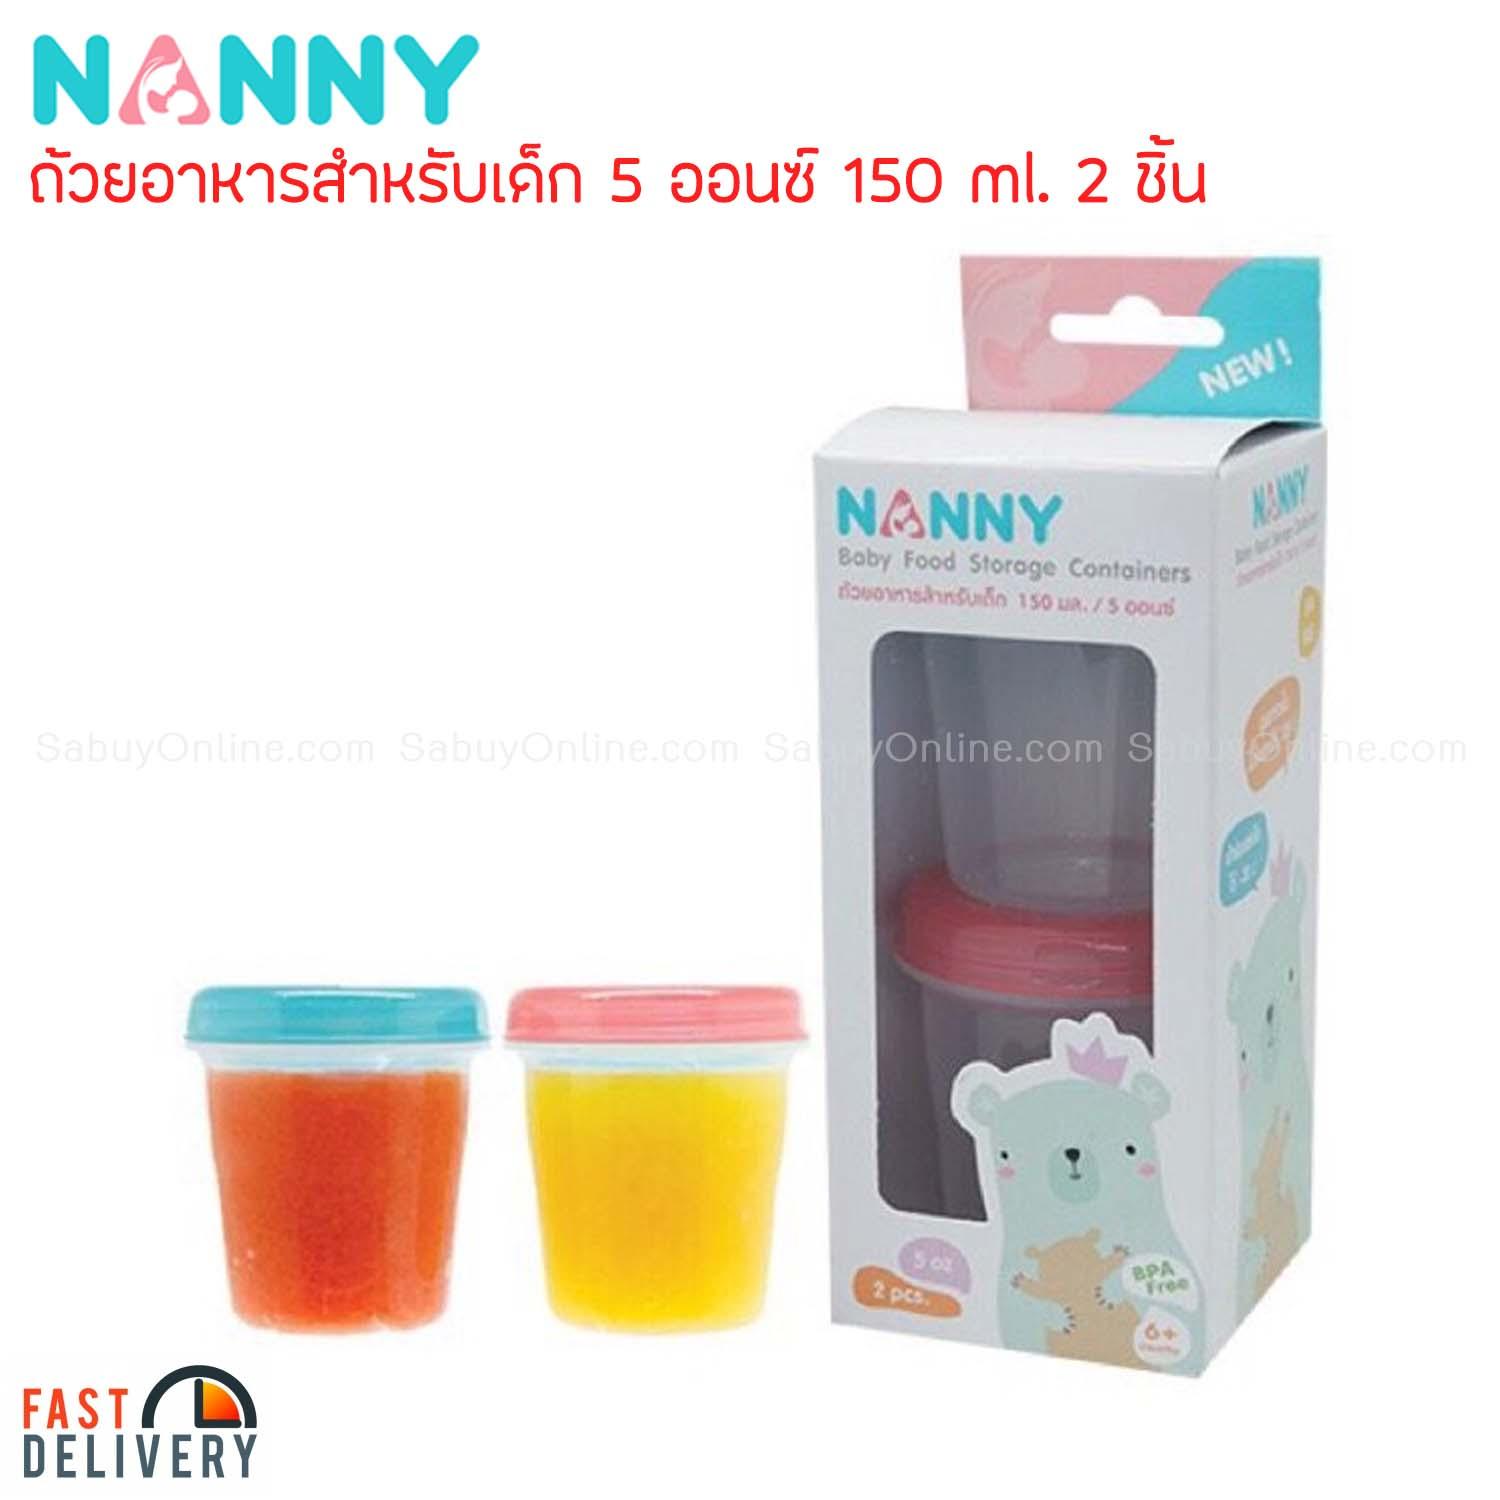 NANNY ถ้วยอาหารสำหรับเด็ก 5 ออนซ์ 150 ml. 2 ชิ้น